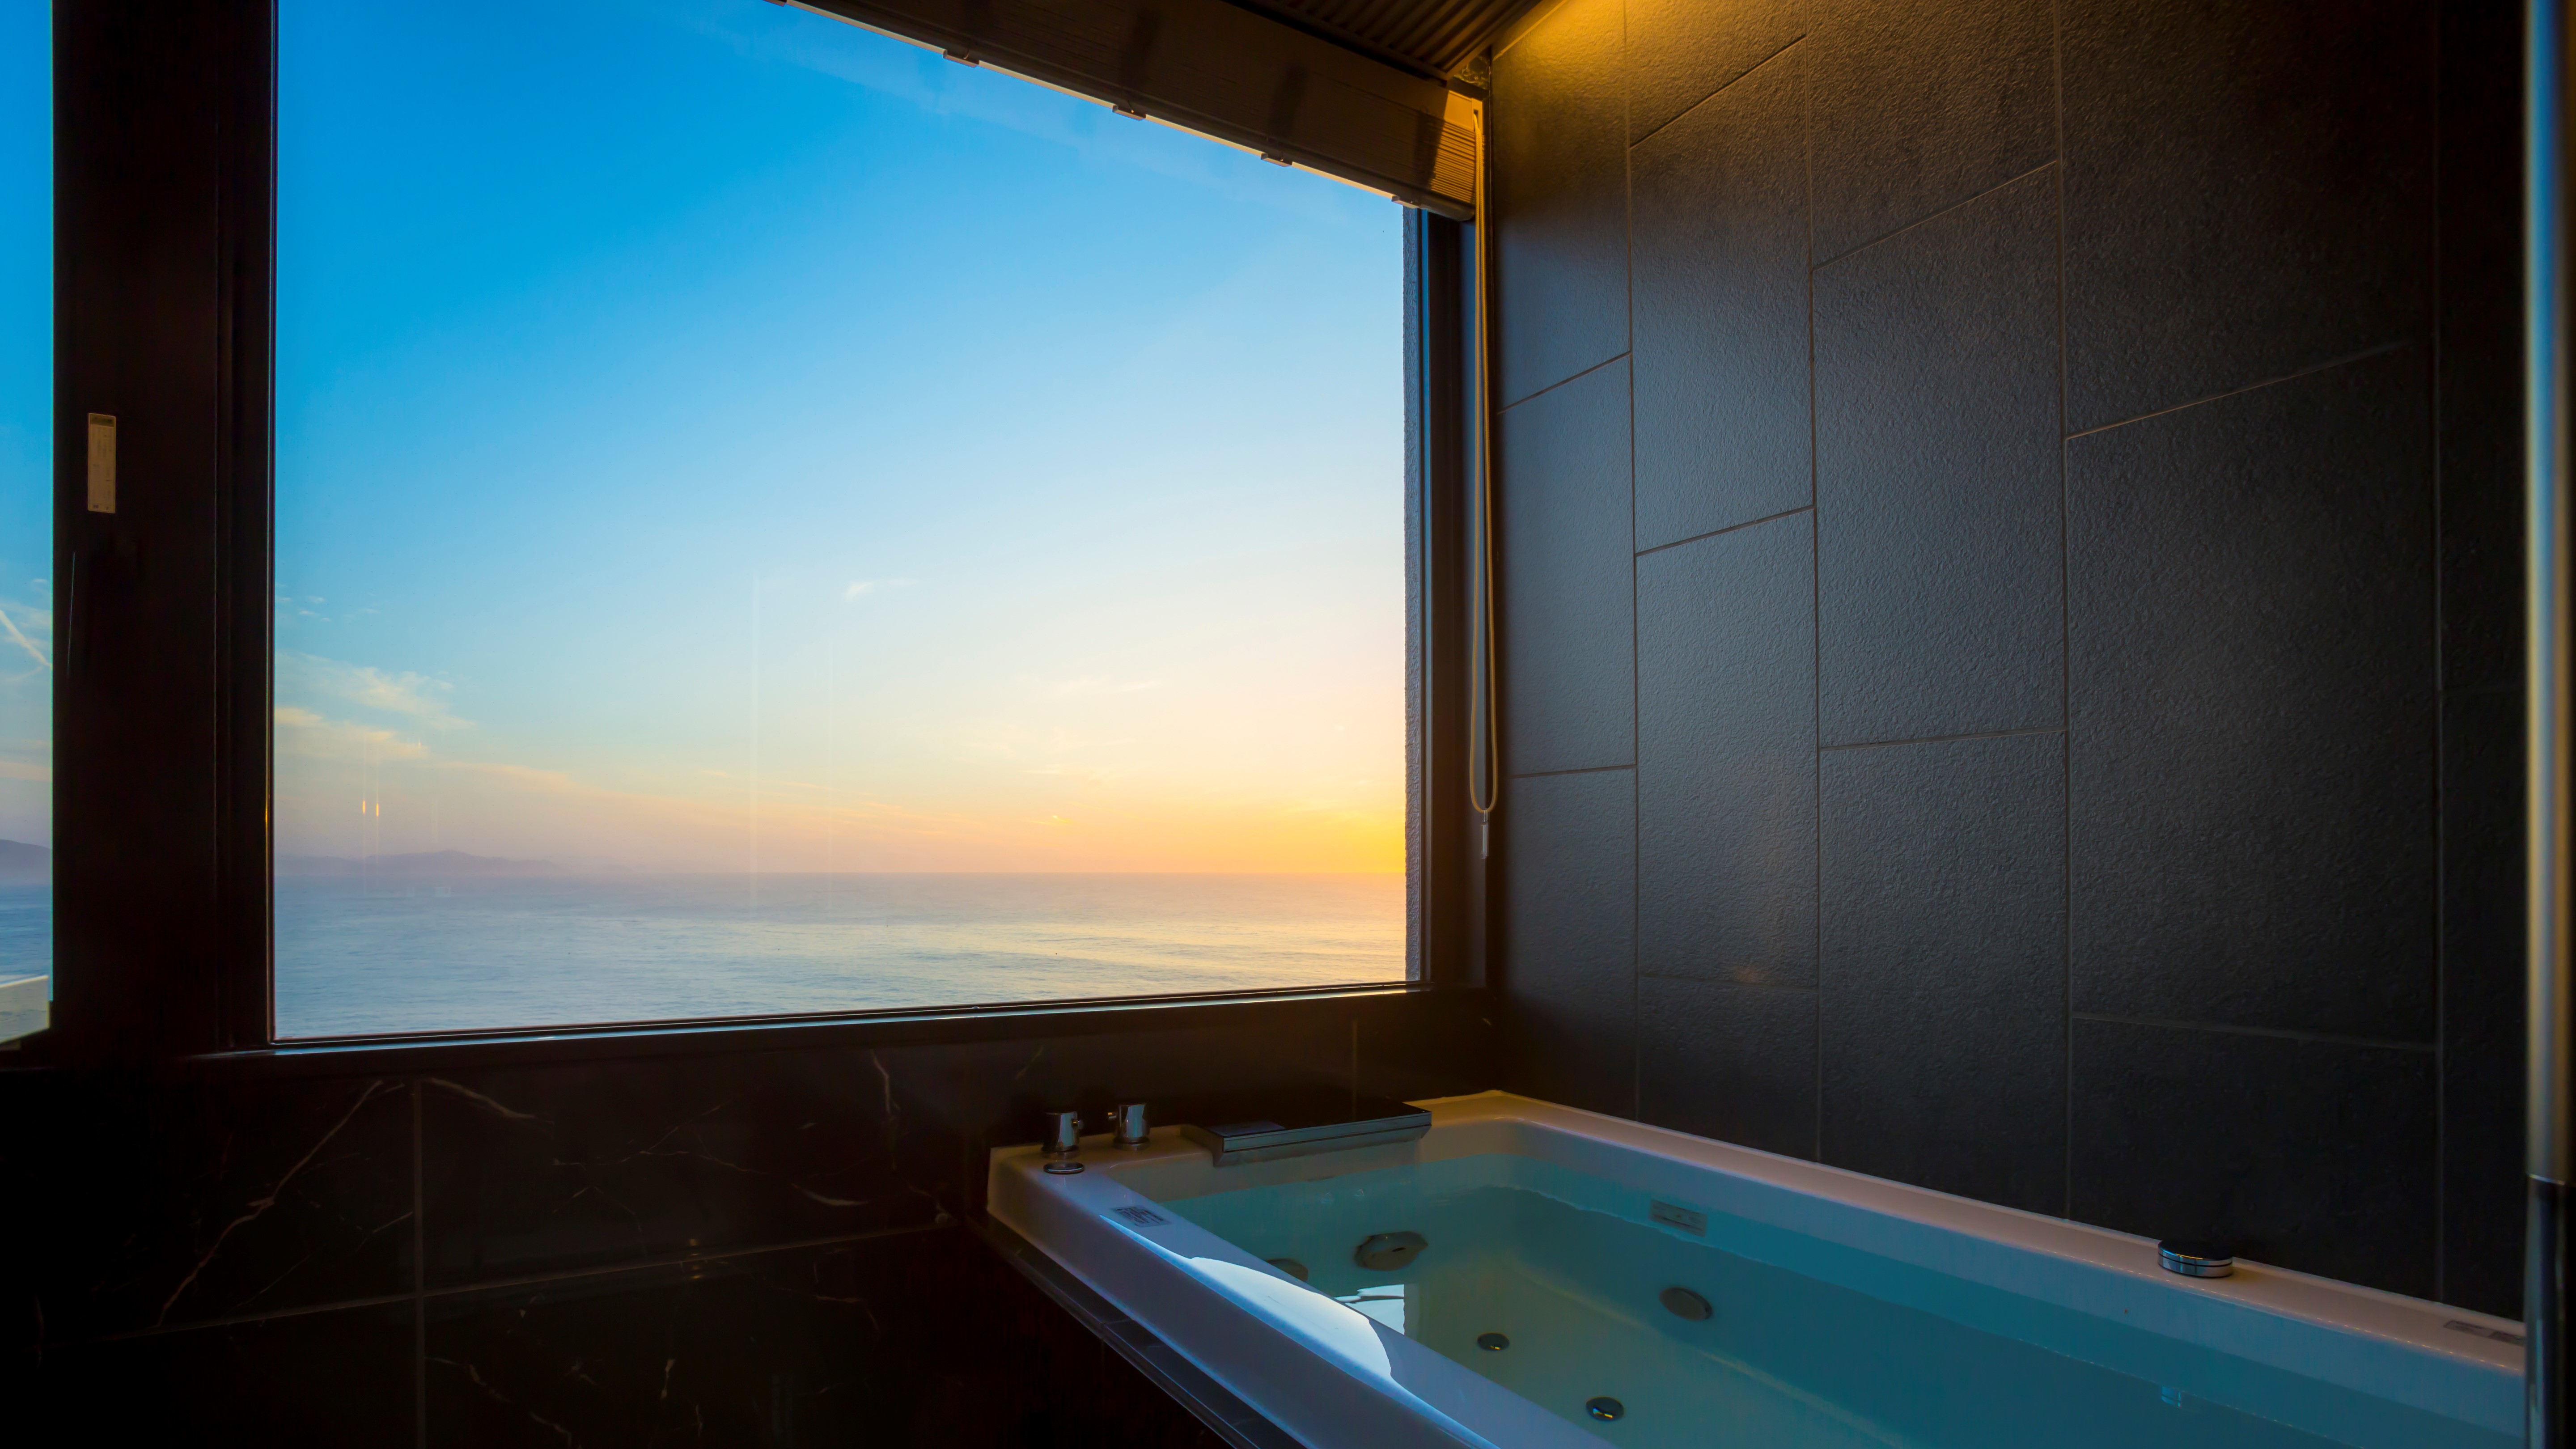 【302・天海】オーシャンビューの客室展望風呂からは、美しい夕景も見ていただけます。